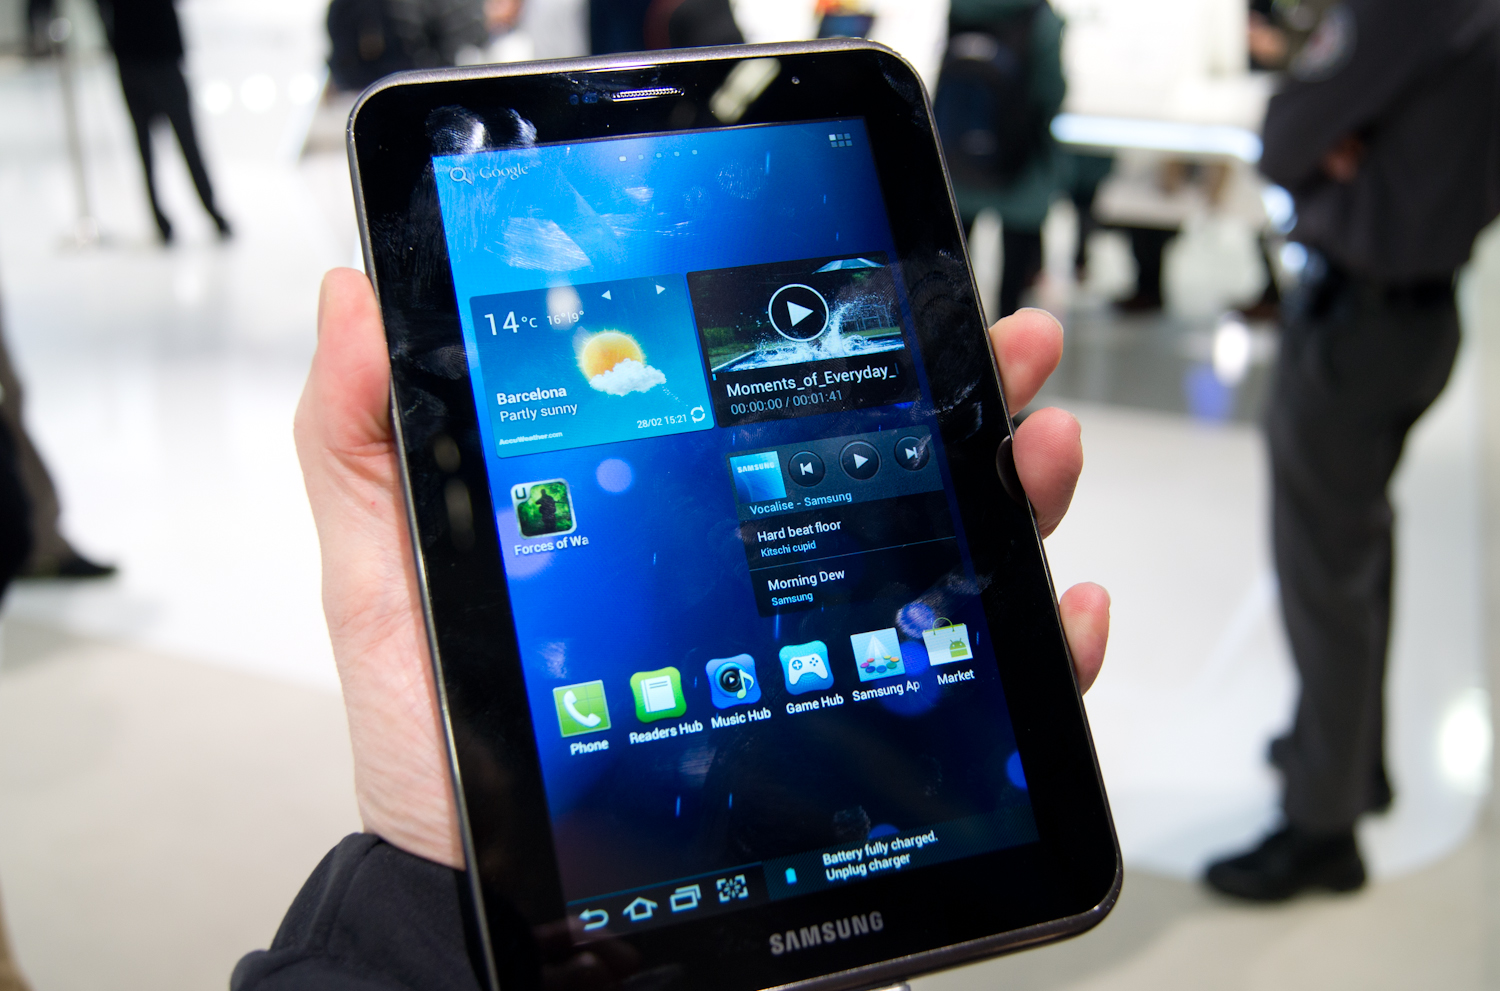 Samsung Galaxy Tab 2 7.0 